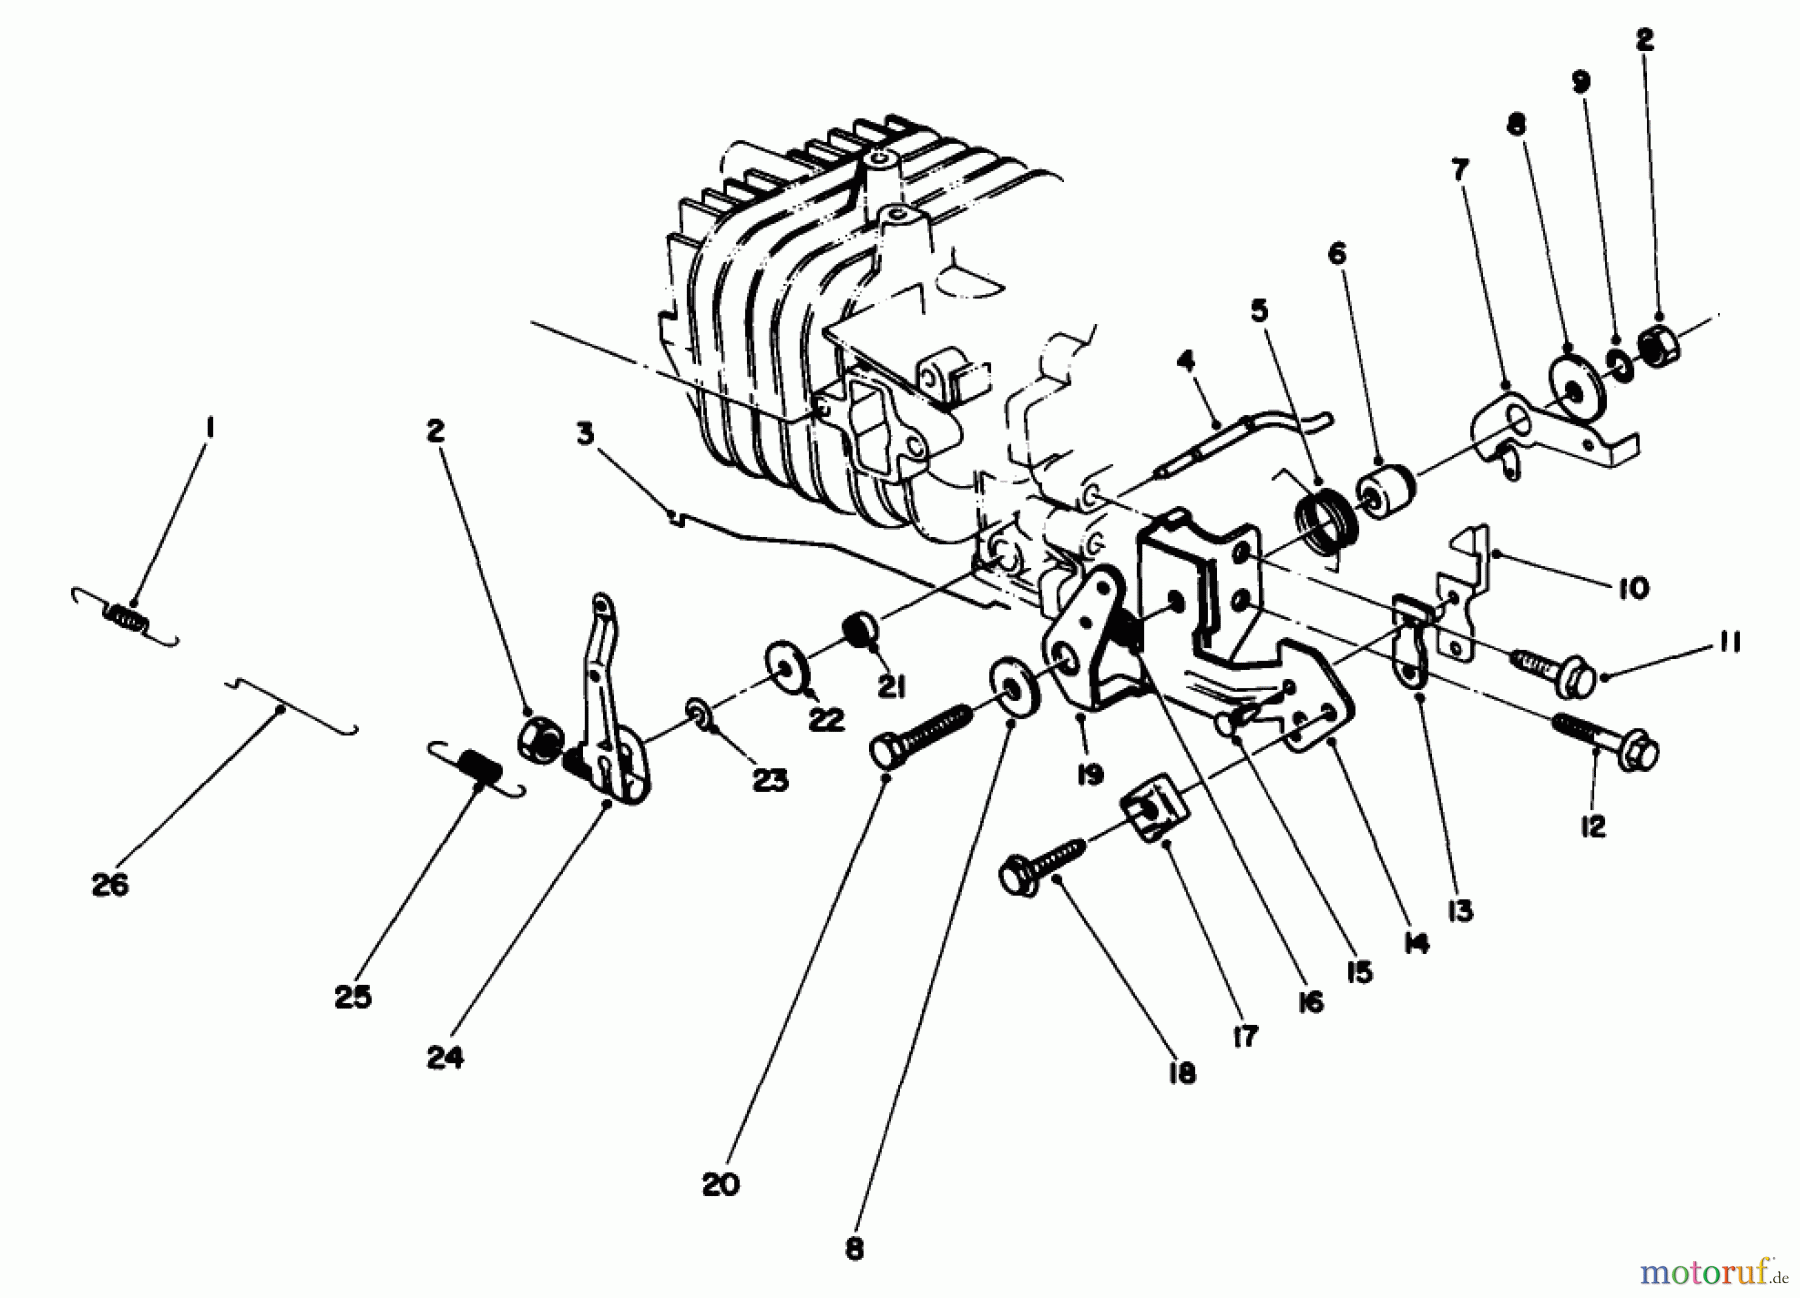  Toro Neu Mowers, Walk-Behind Seite 2 22035 - Toro Lawnmower, 1988 (8002990-8999999) ENGINE ASSEMBLY MODEL NO. 47PH7 #4